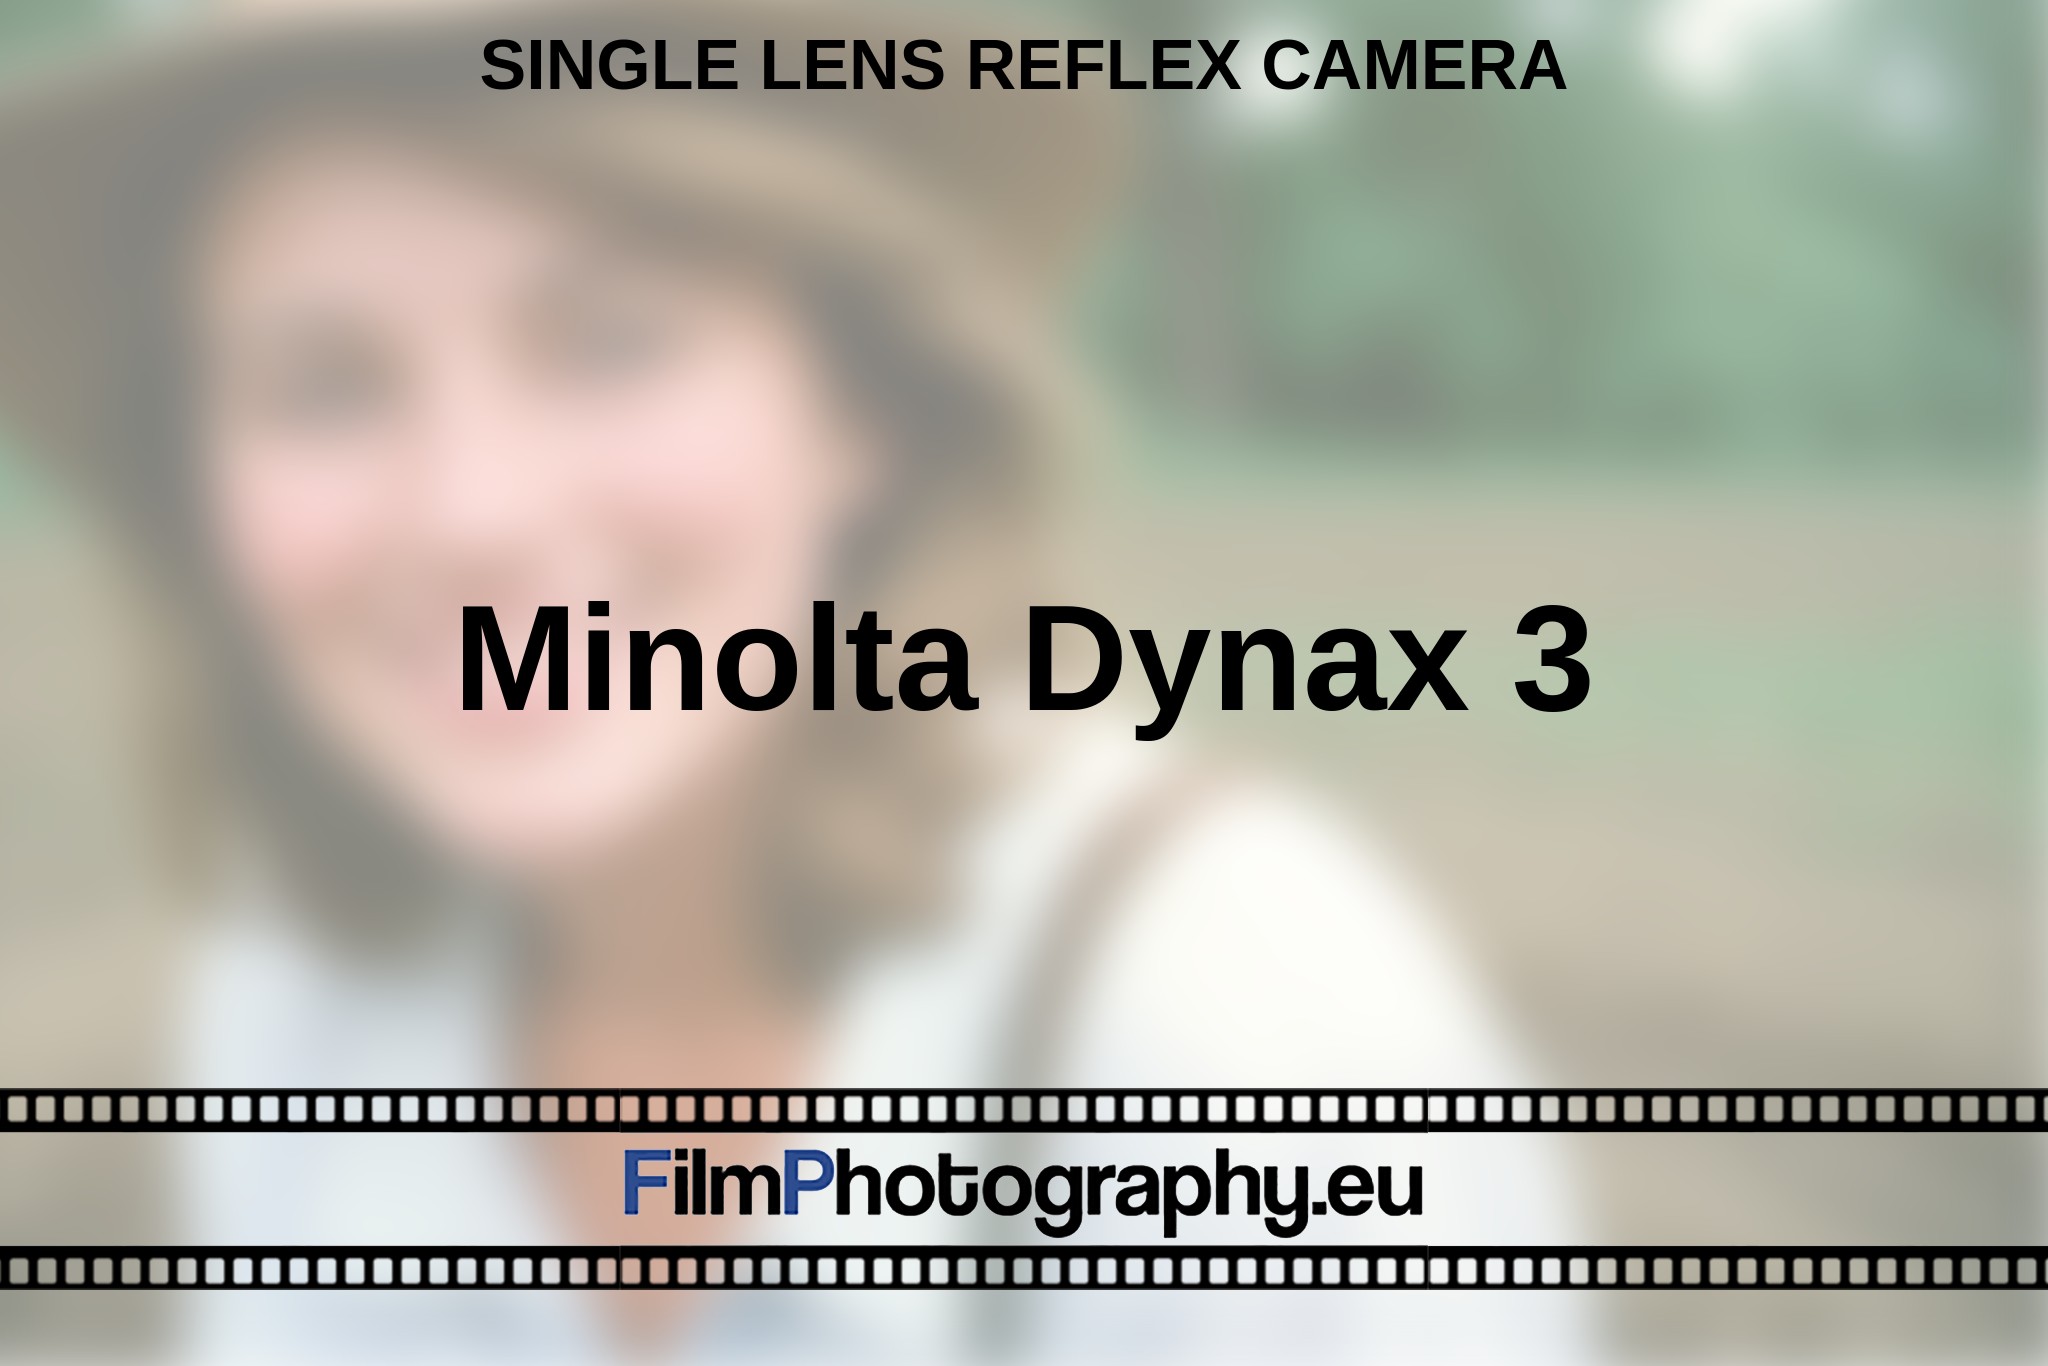 minolta-dynax-3-single-lens-reflex-camera-en-bnv.jpg